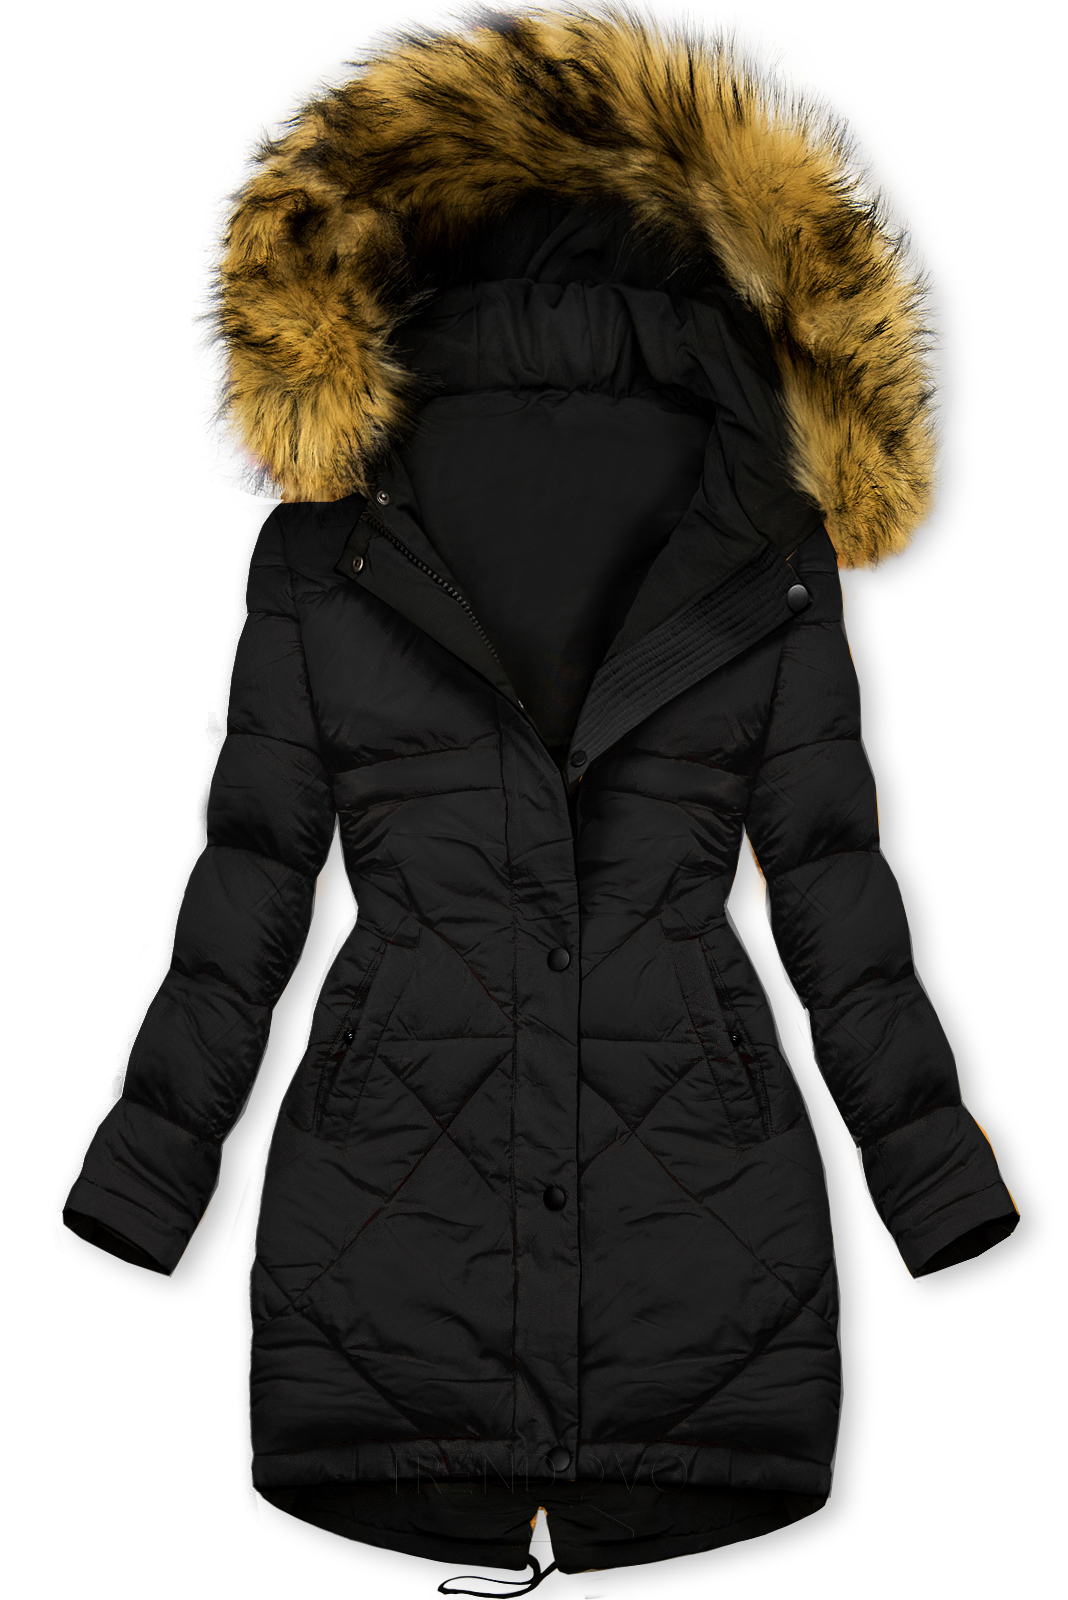 Černo-černá oboustranná zimní bunda